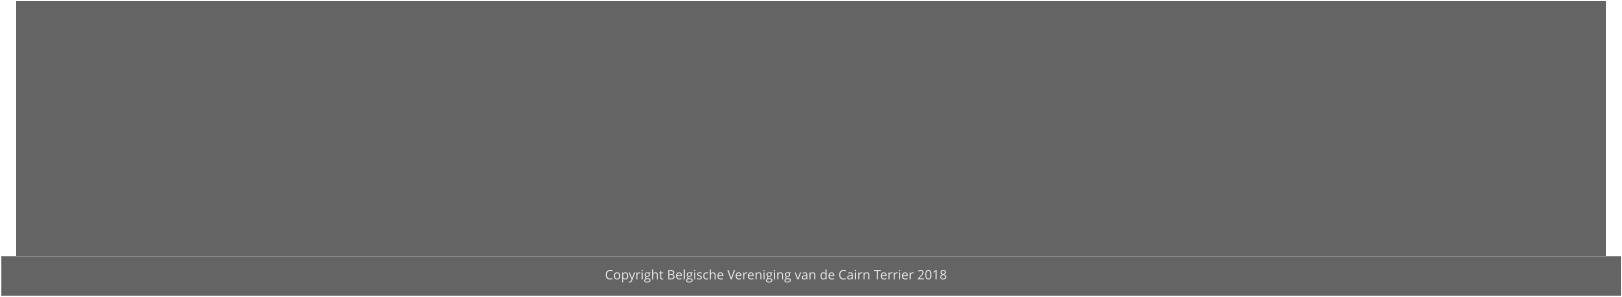 Copyright Belgische Vereniging van de Cairn Terrier 2018